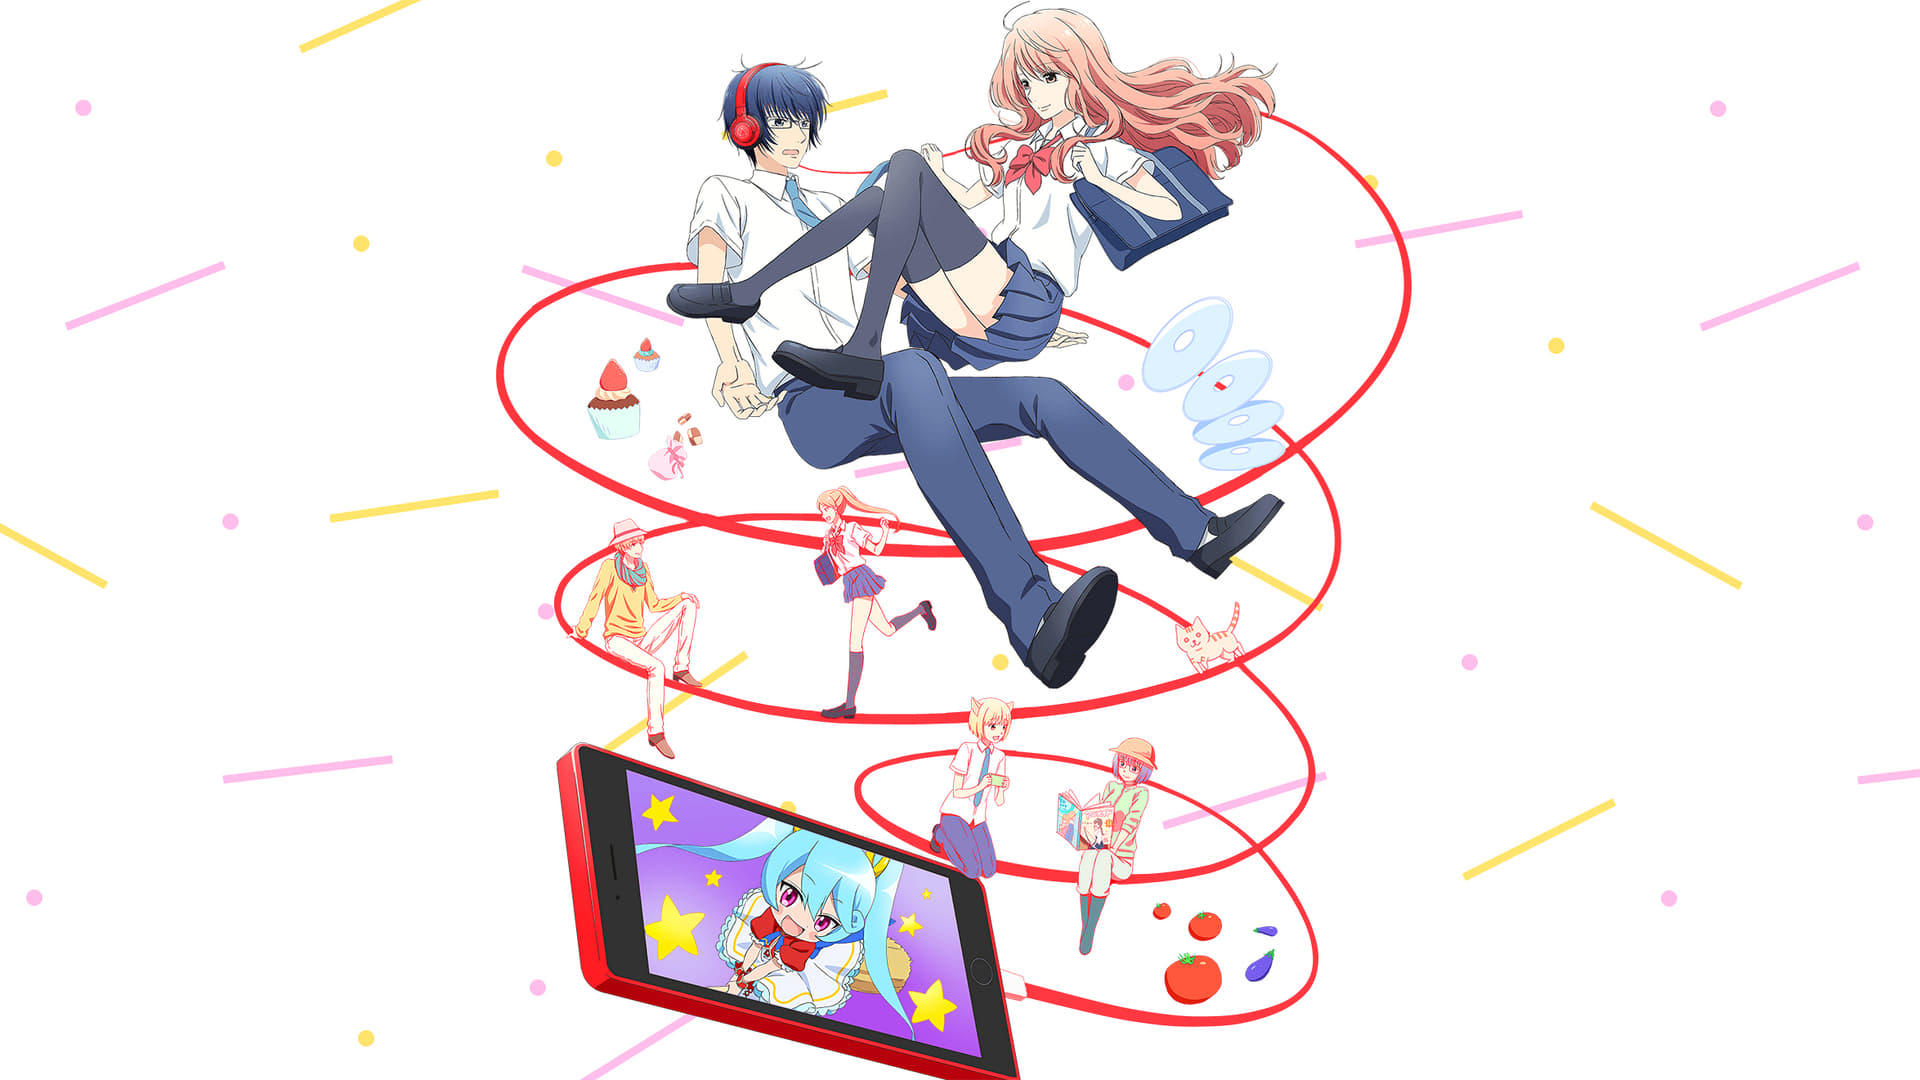 3D Kanojo  Segunda temporada do anime estreia em 2019 - PlayReplay